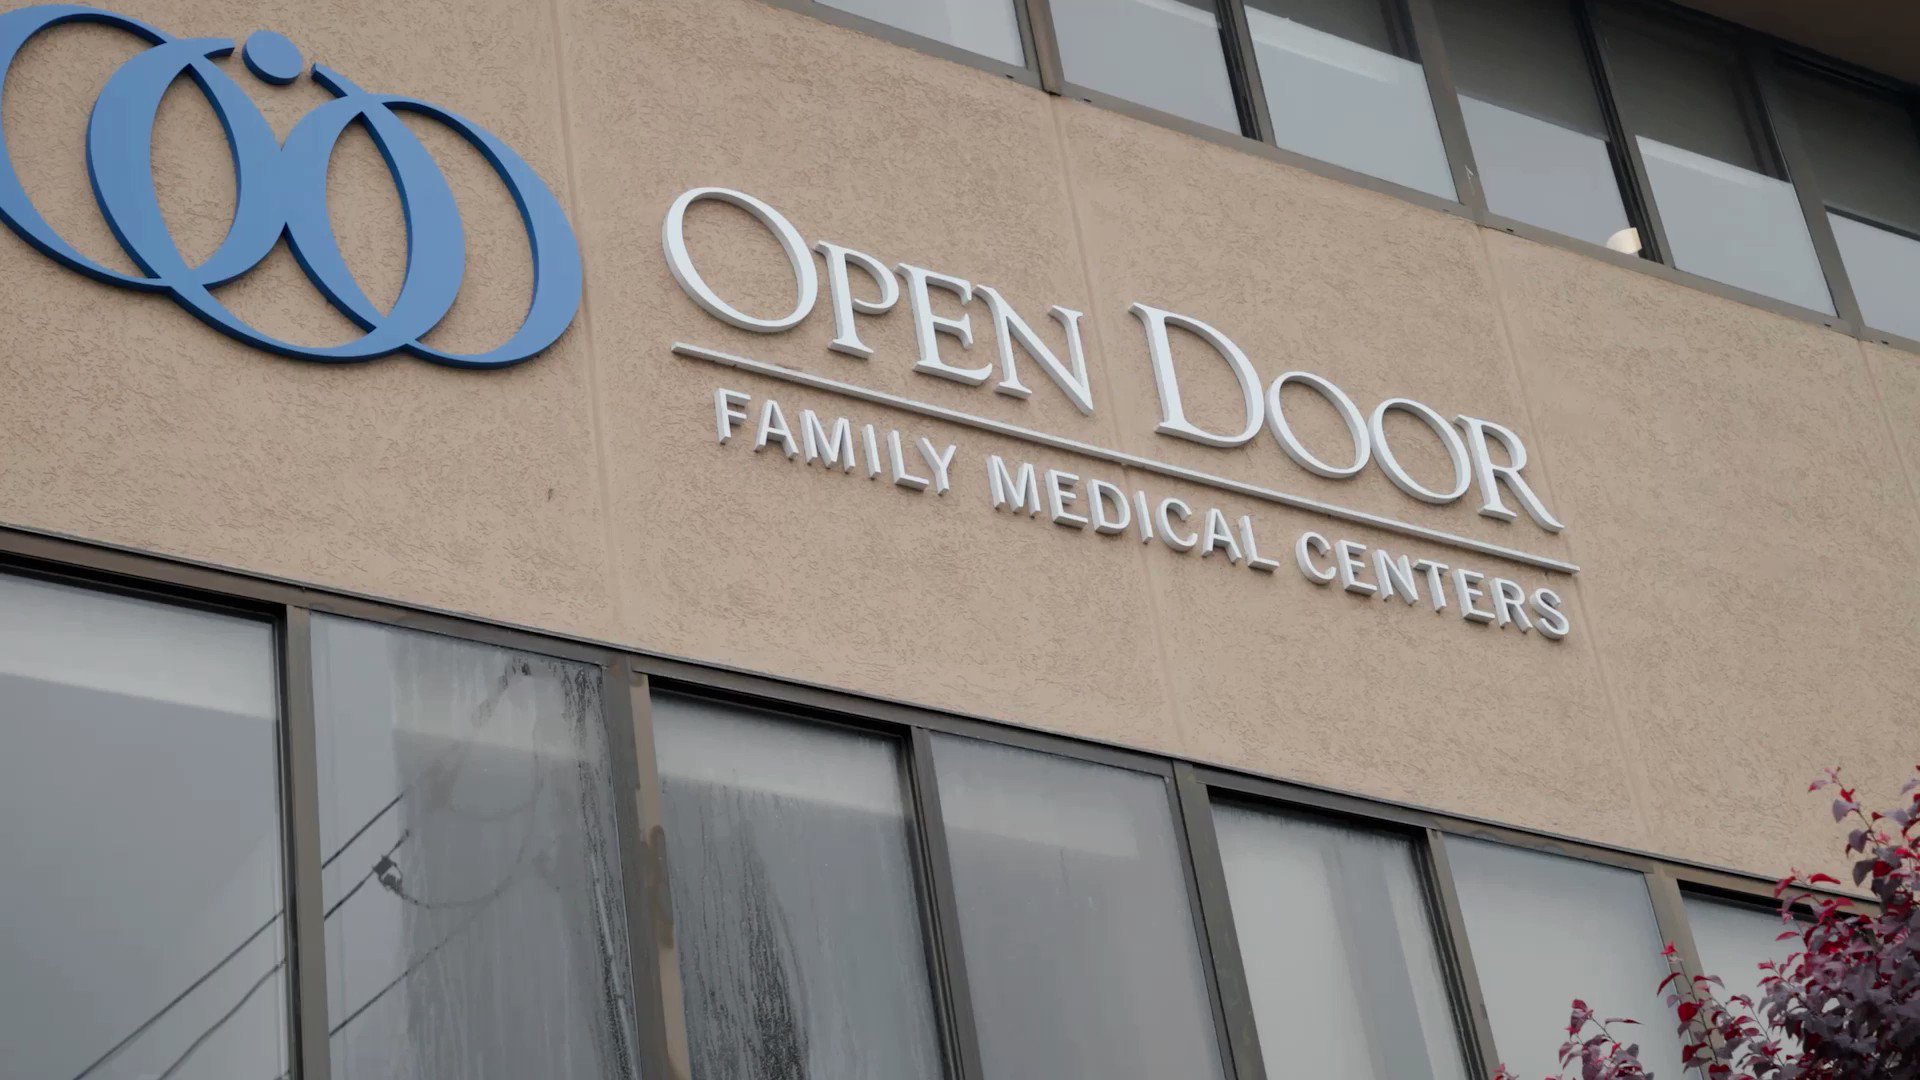 Open Door Family Medical Center